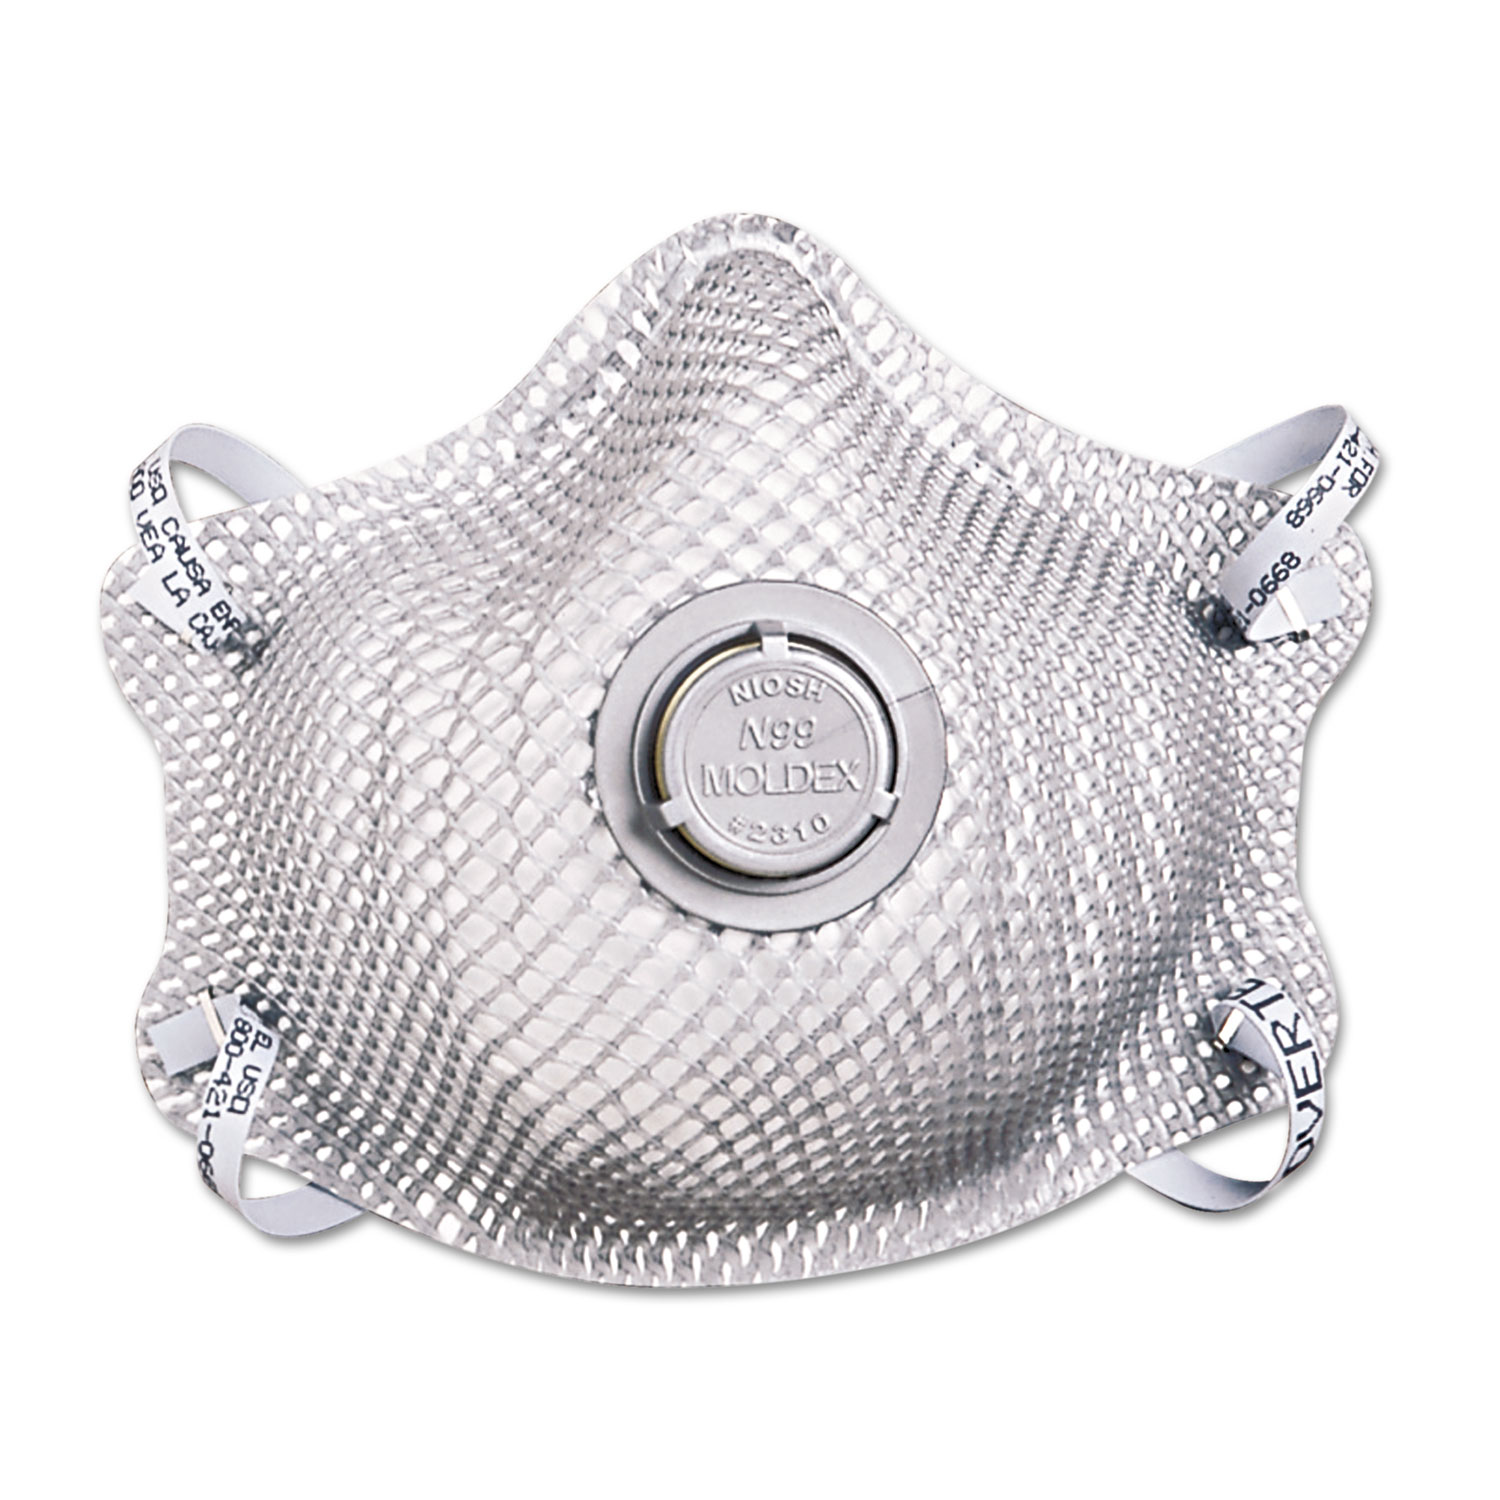 N99 Premium Particulate Respirator, Half-Face Mask, Medium/Large, 10/Box